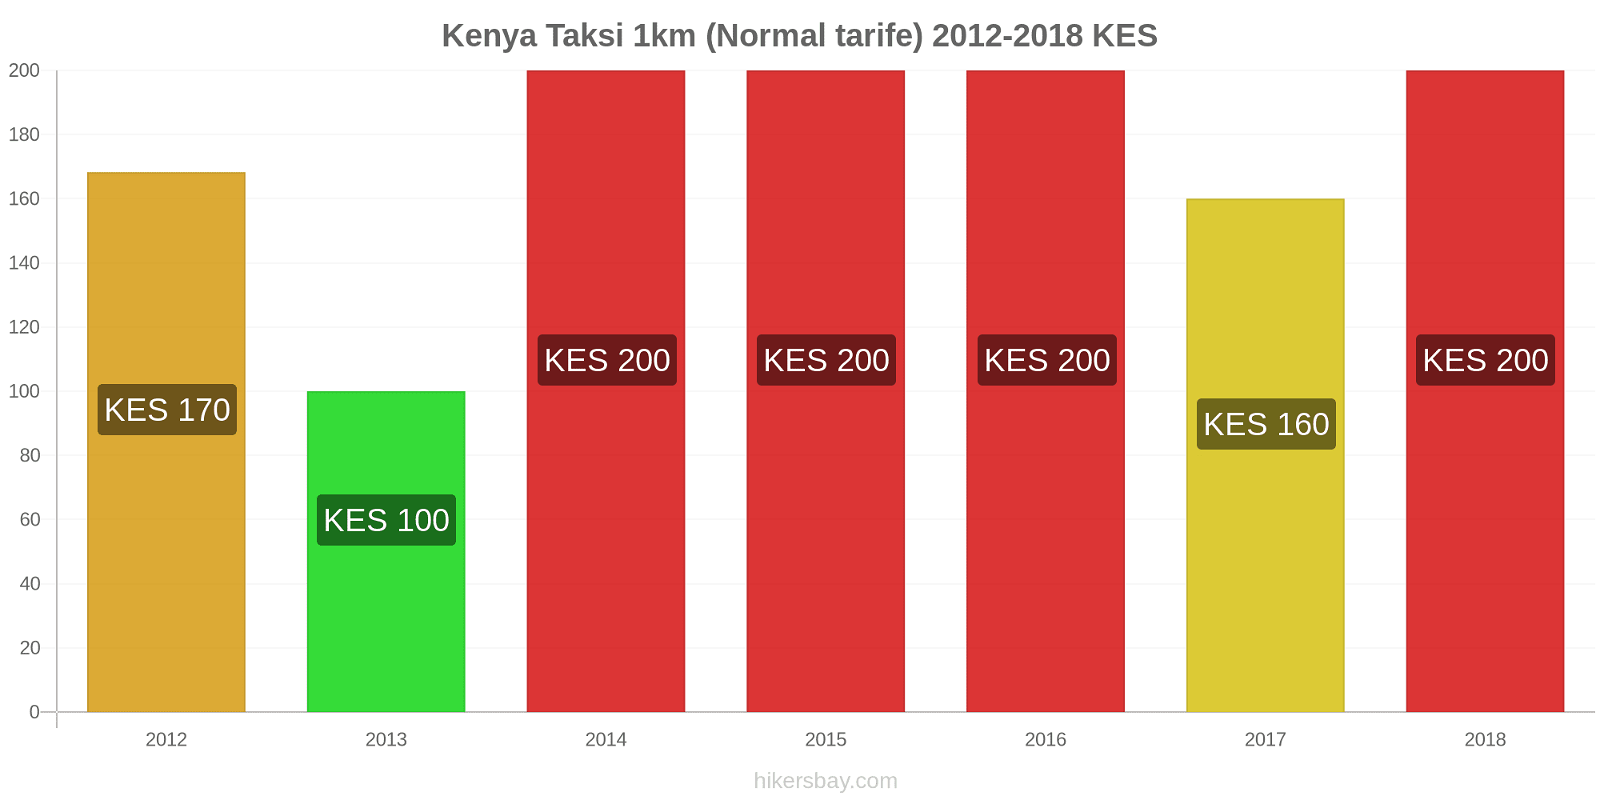 Kenya fiyat değişiklikleri Taksi 1km (Normal tarife) hikersbay.com